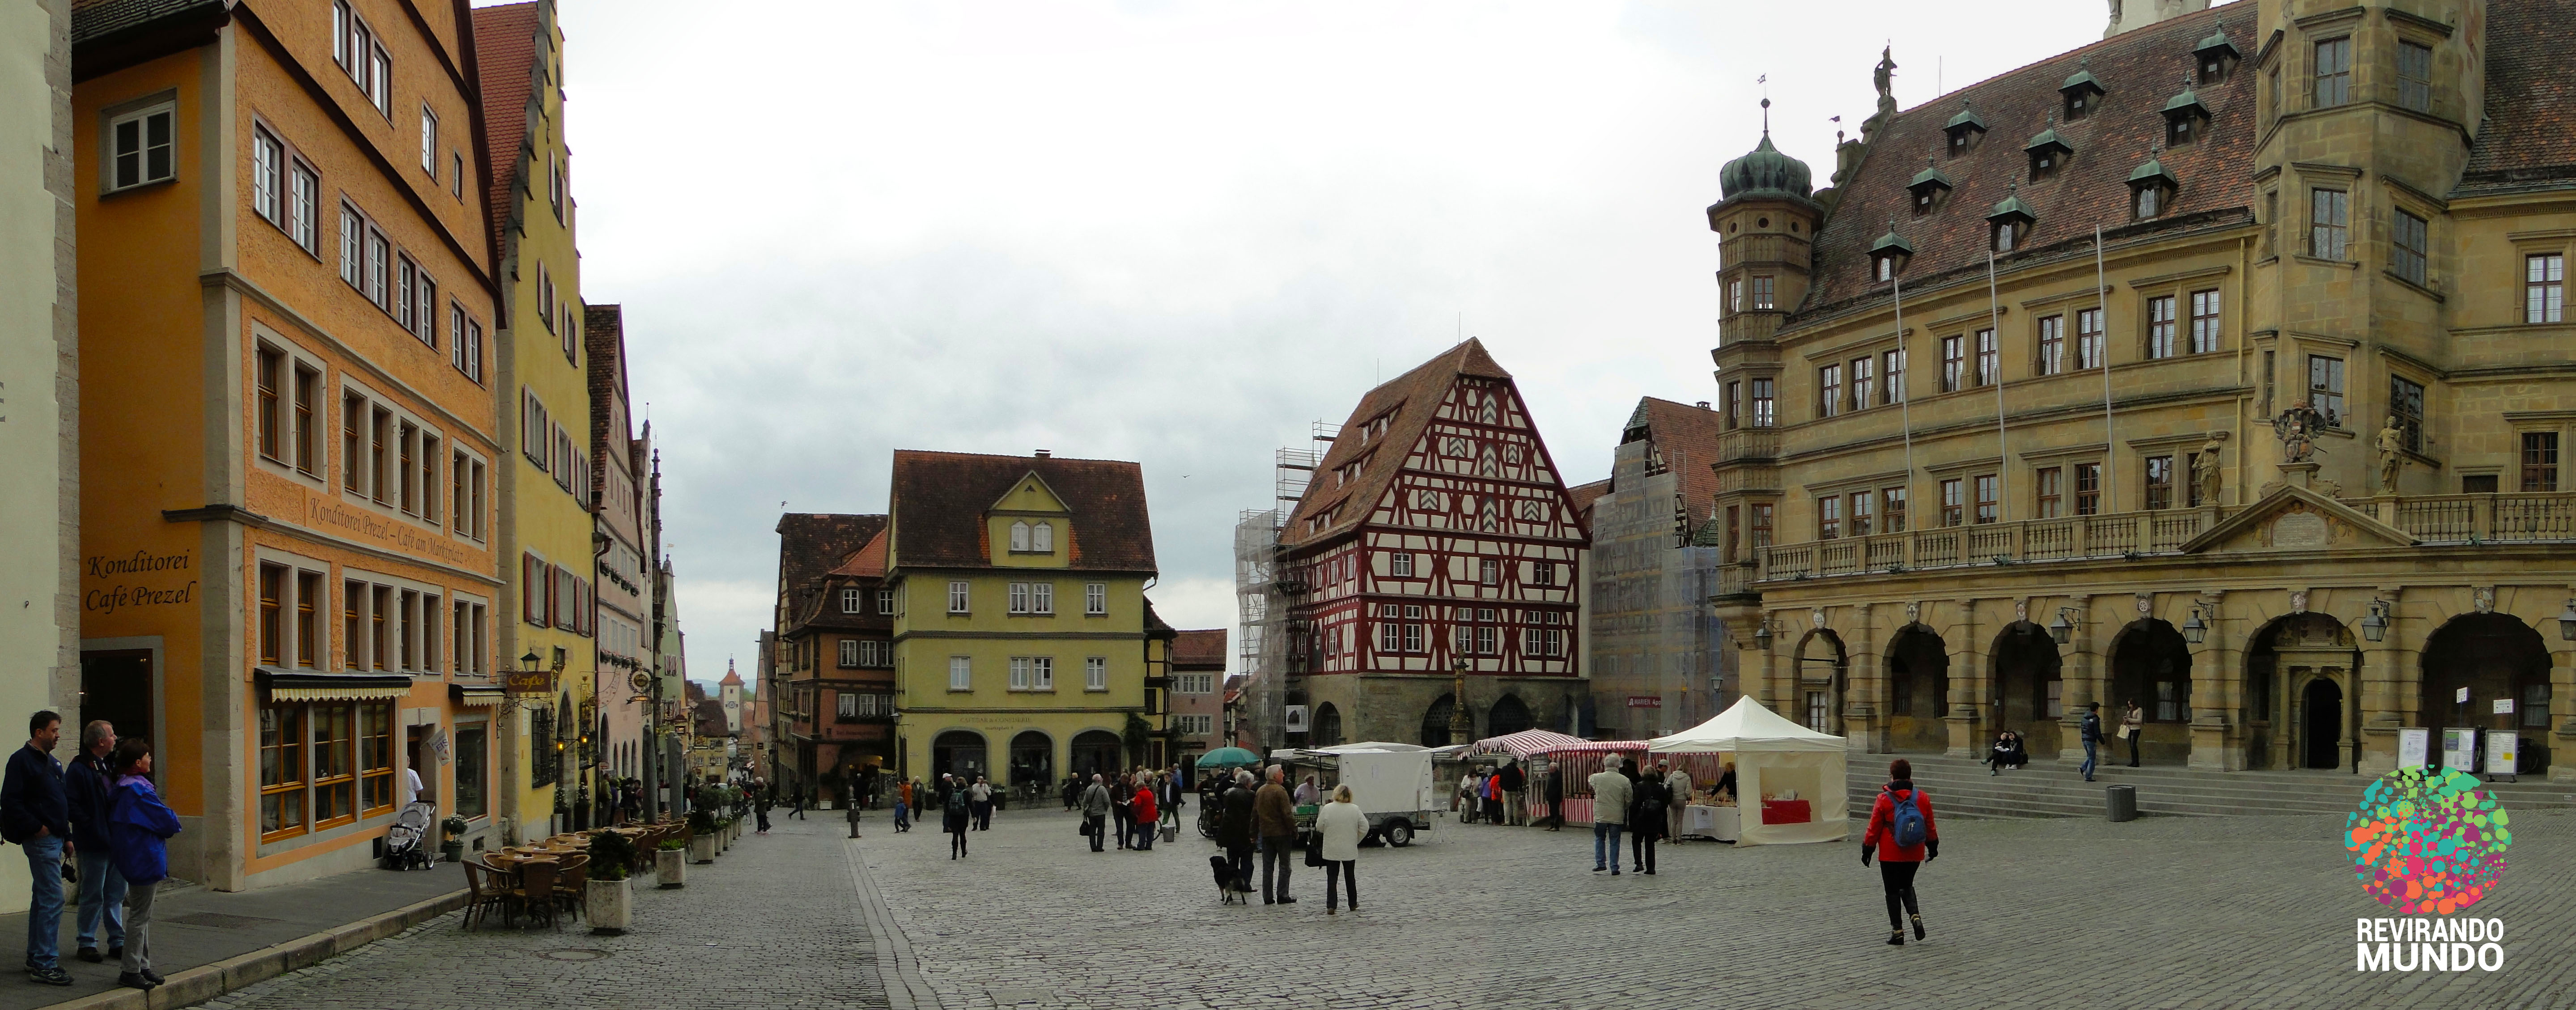 Praça de Rothenburg